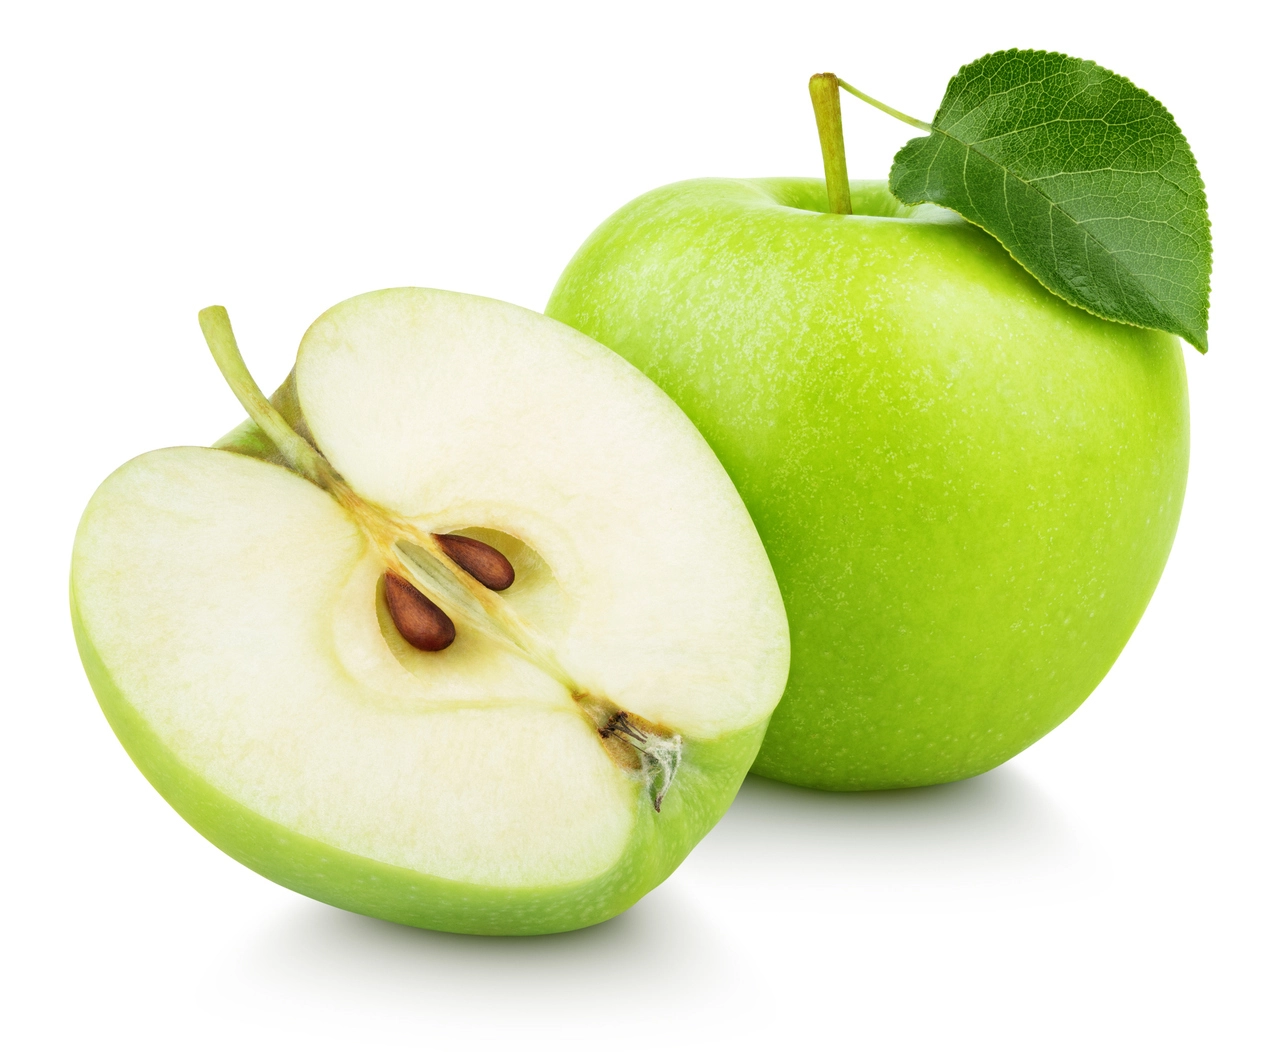 Nuk është molla, zbuloni frutin e gjelbër që largon stresin